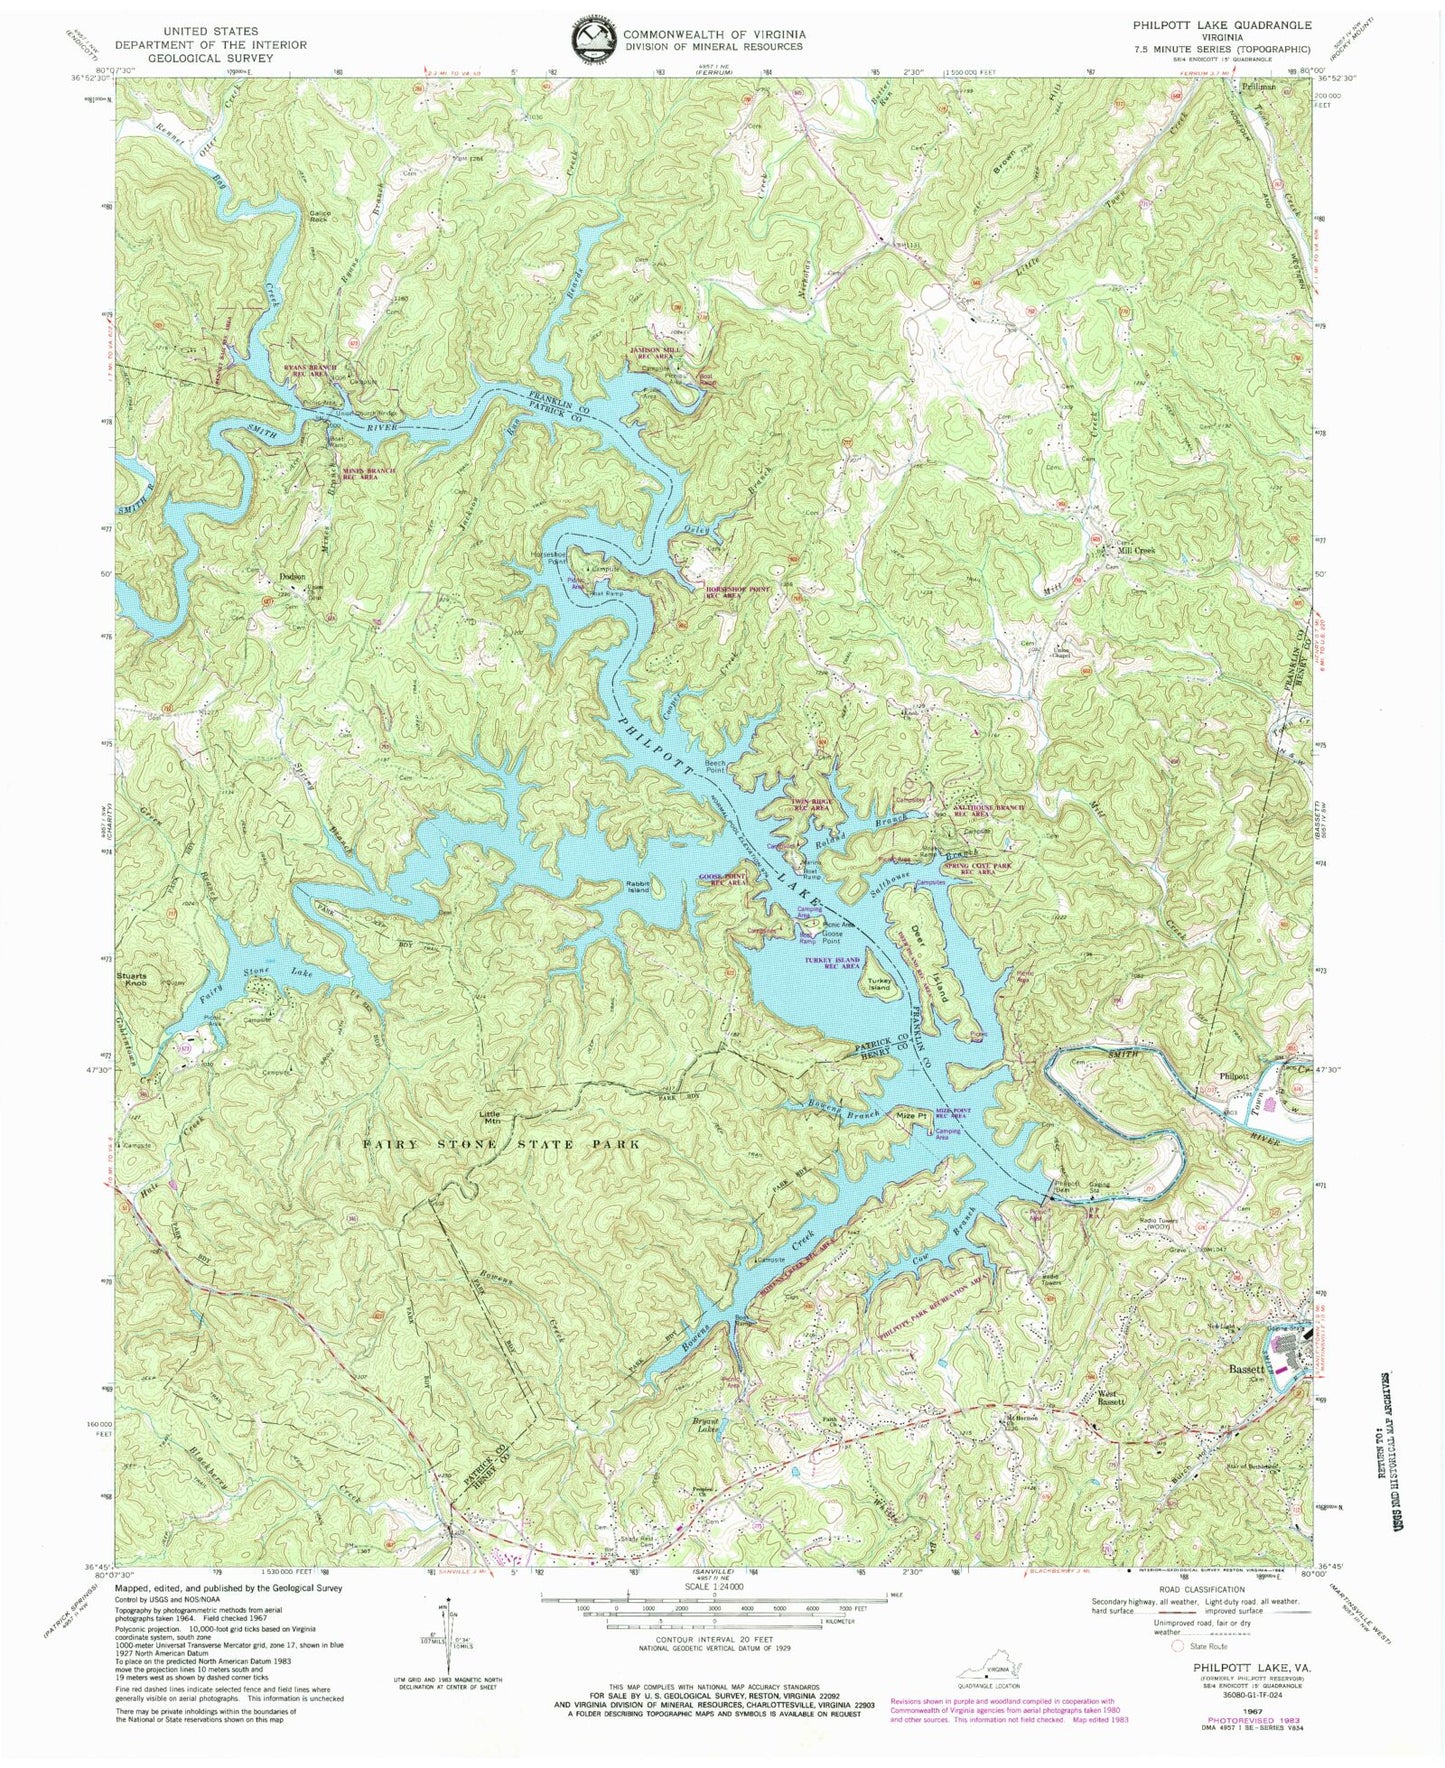 Classic USGS Philpott Lake Virginia 7.5'x7.5' Topo Map Image